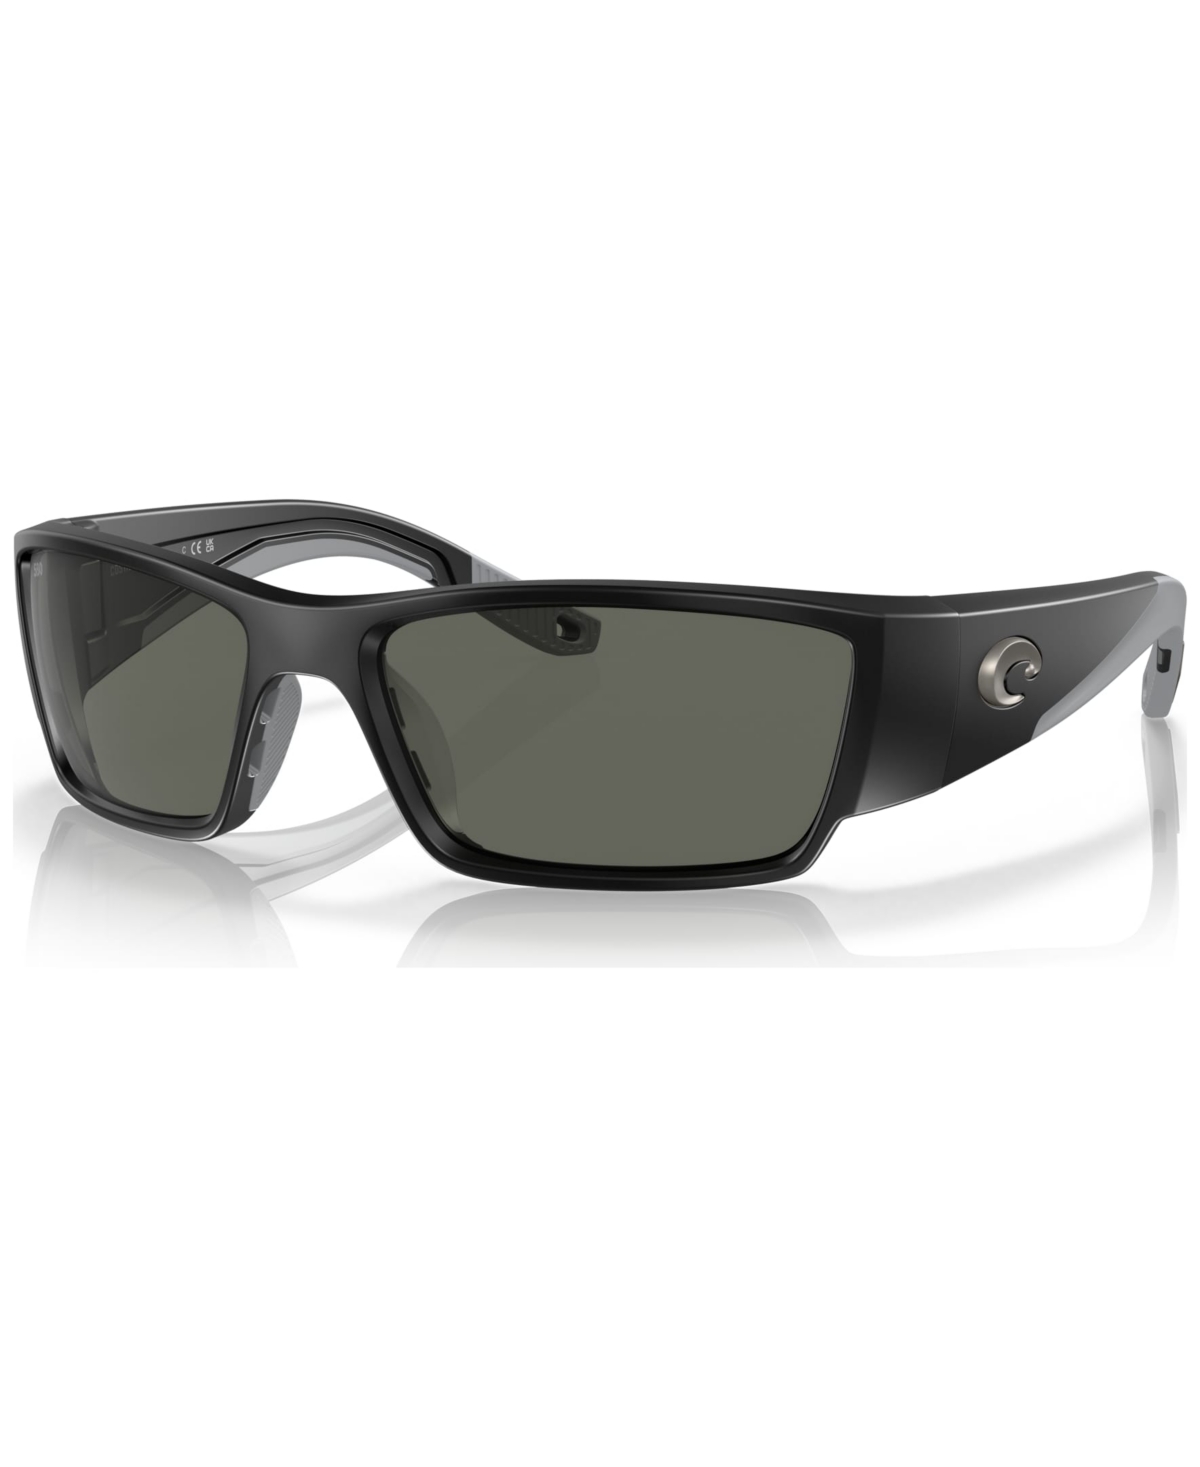 Costa Del Mar Men's Polarized Sunglasses, Corbina Pro In Matte Black